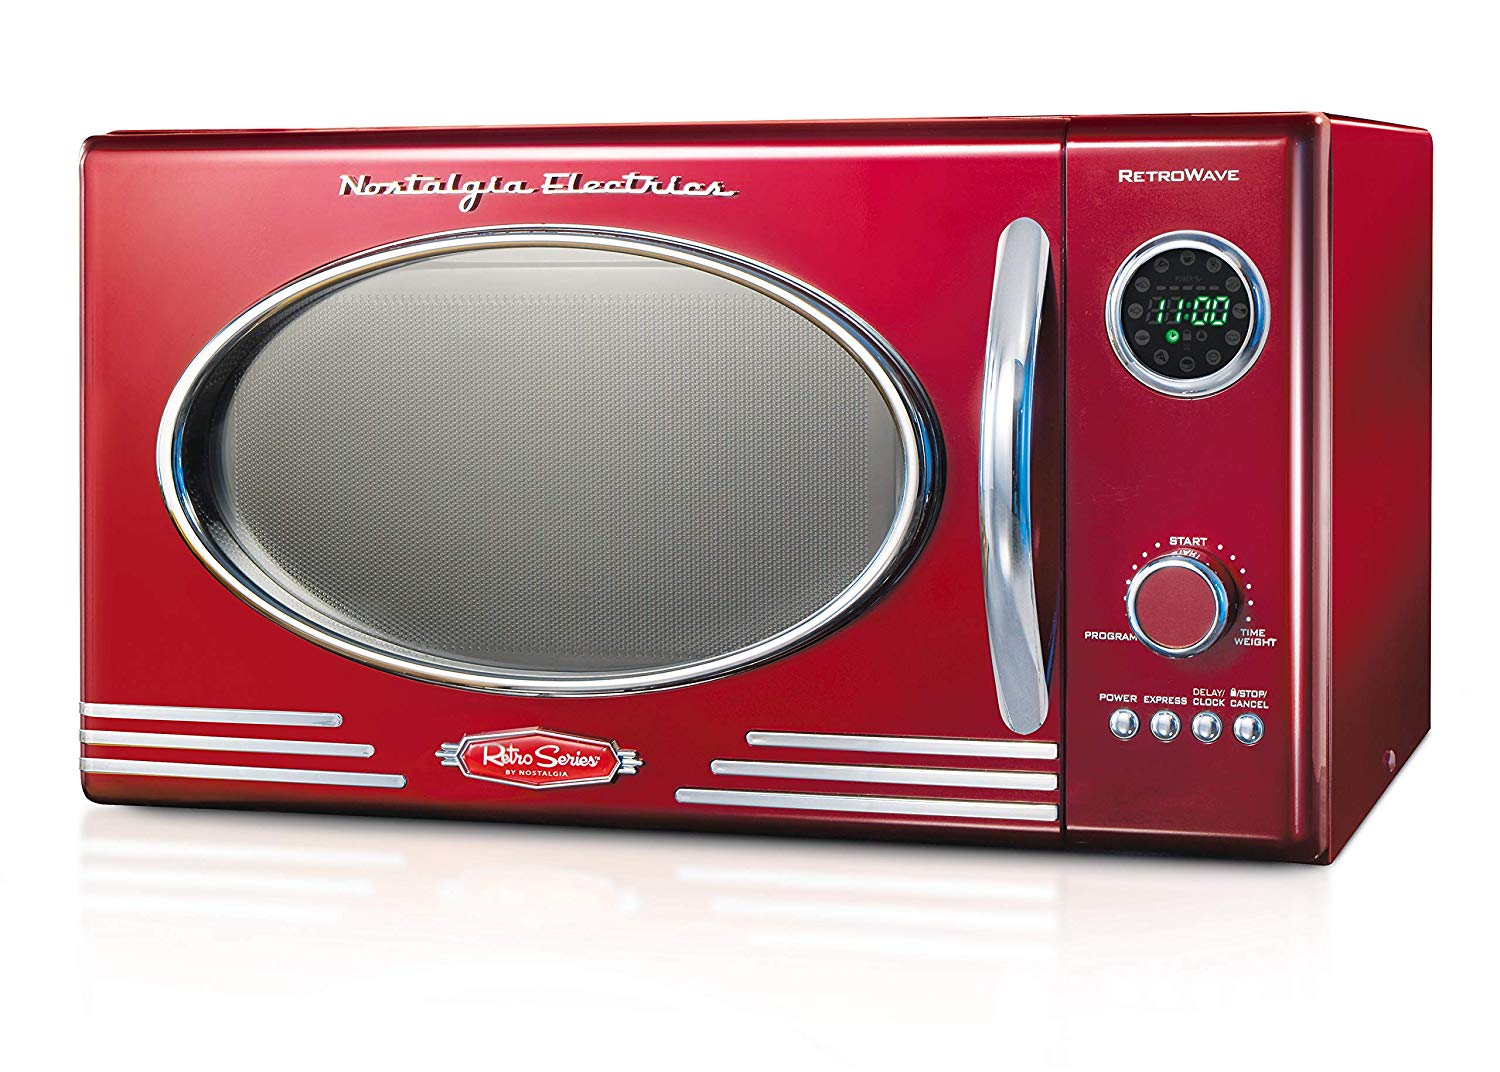 Nostalgia RMO4RR Microwave Oven